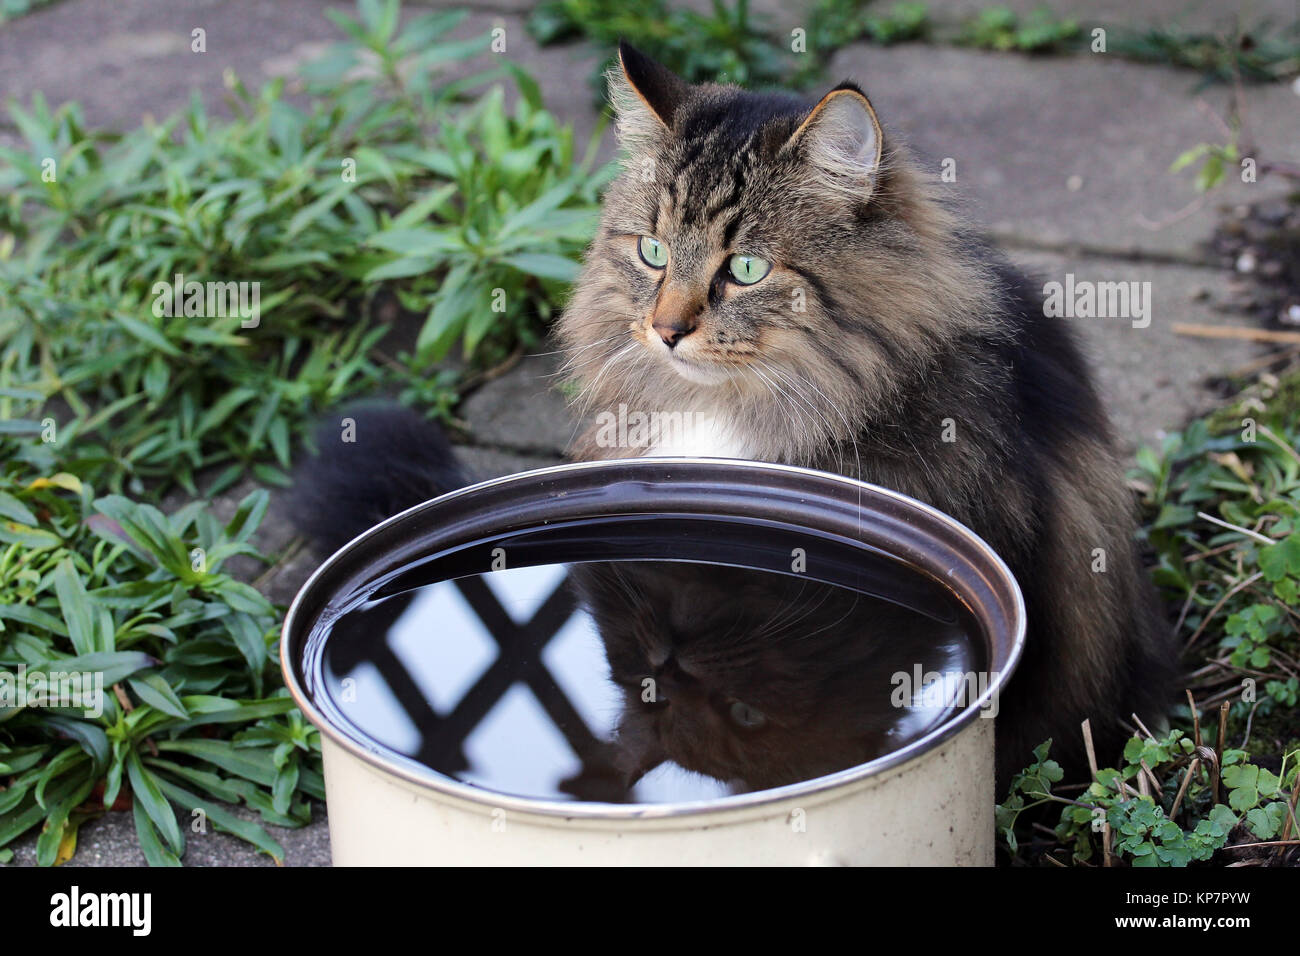 Los gatos les gusta beber el agua de lluvia. Un gato se sienta delante de un tazón de agua de lluvia Foto de stock